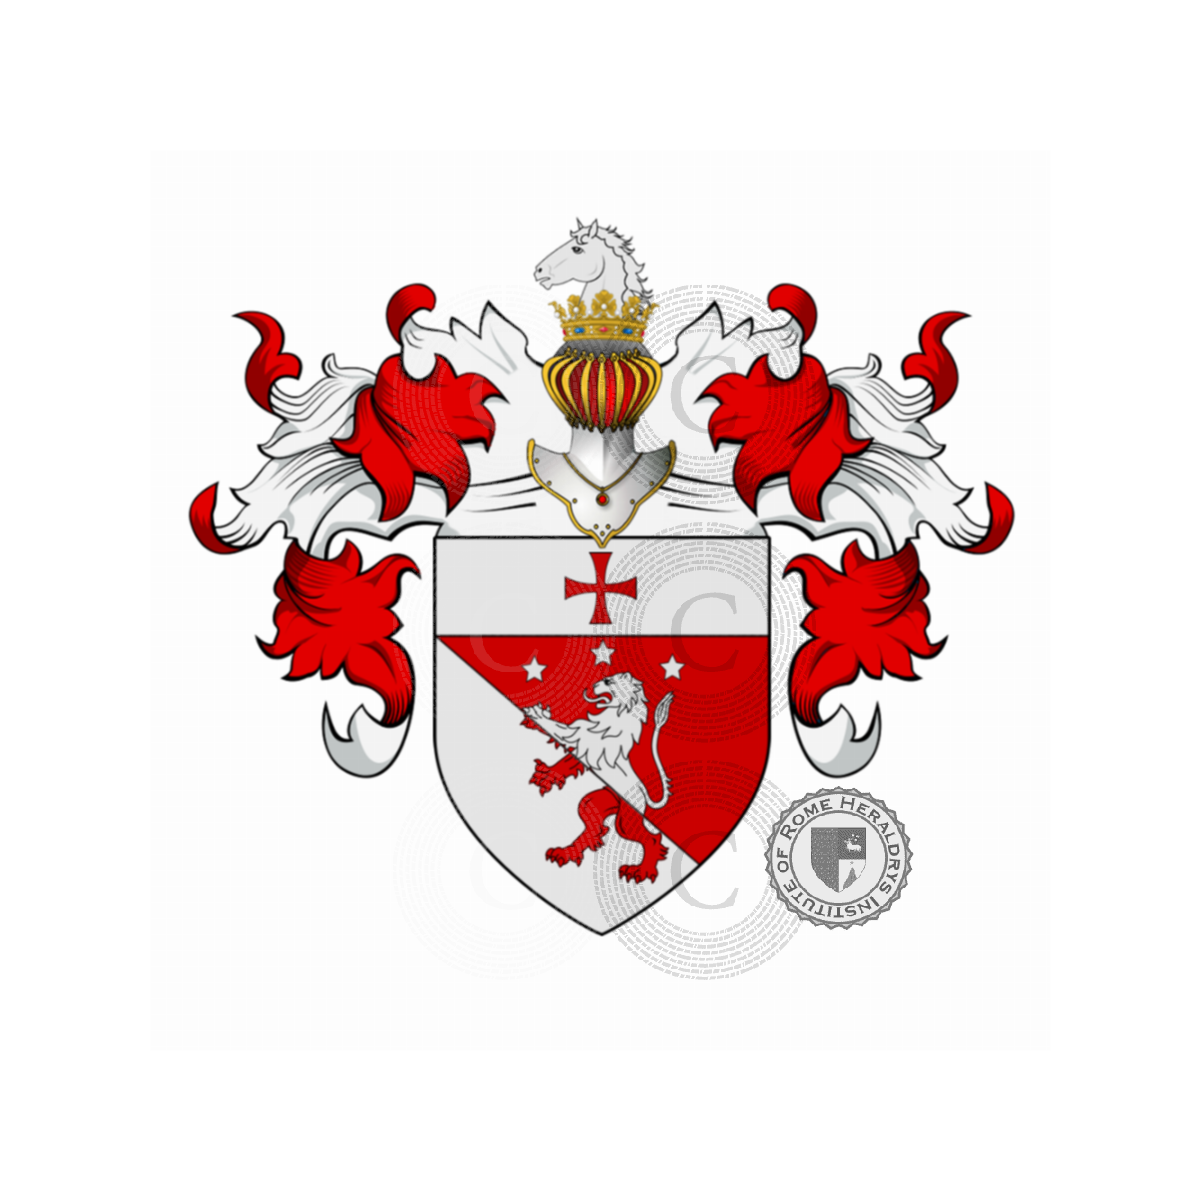 Escudo de la familiaAdelardi, Bulgari, Marcheselli o Marchesiello, Adelardi,Bulgari,Marchesello